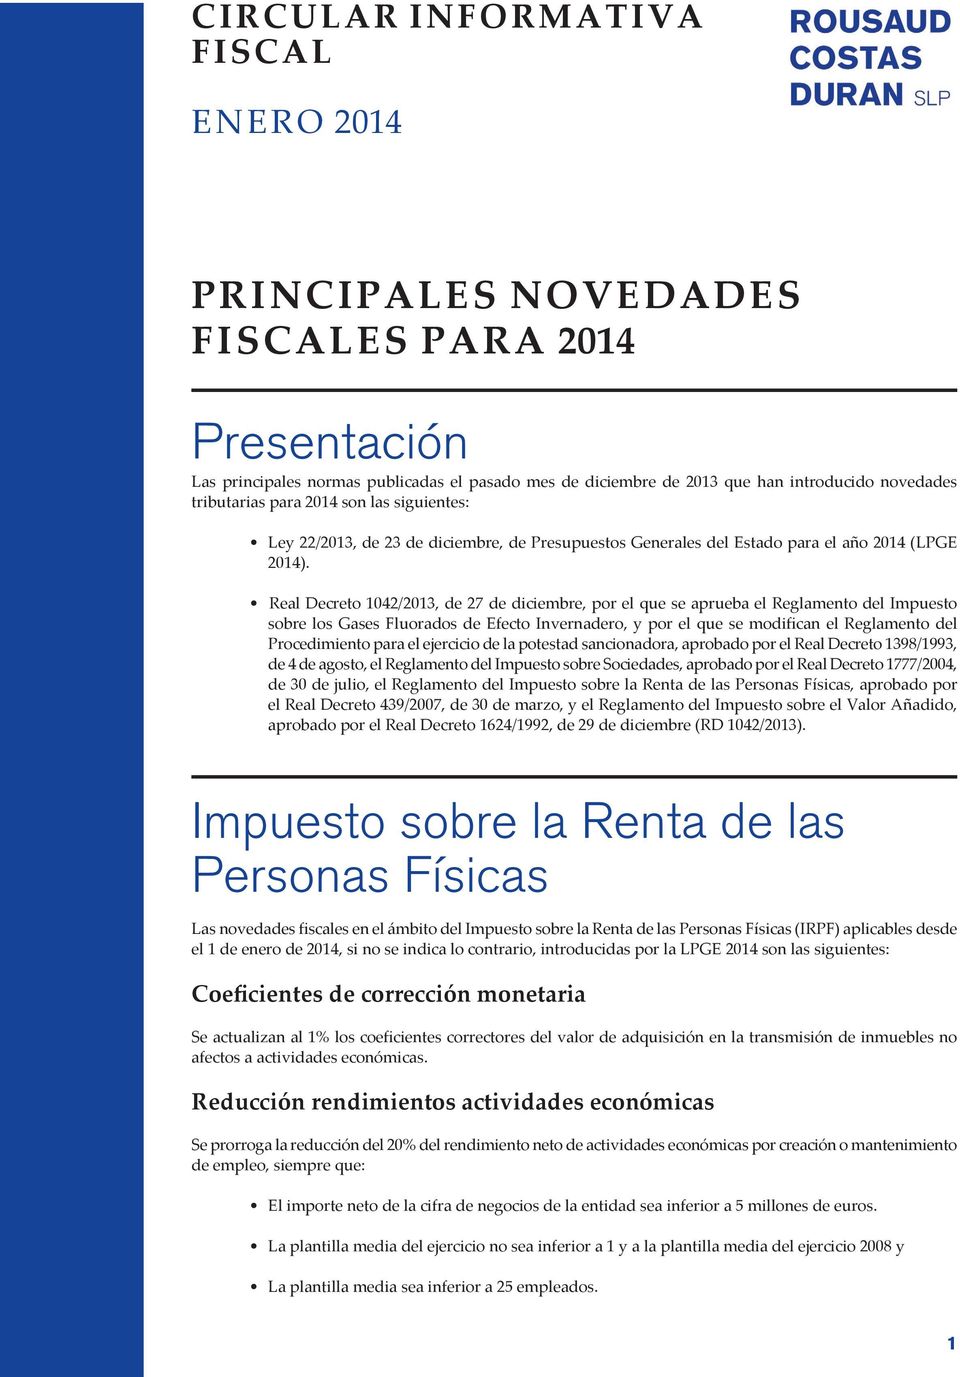 Real Decreto 1042/2013, de 27 de diciembre, por el que se aprueba el Reglamento del Impuesto sobre los Gases Fluorados de Efecto Invernadero, y por el que se modifican el Reglamento del Procedimiento